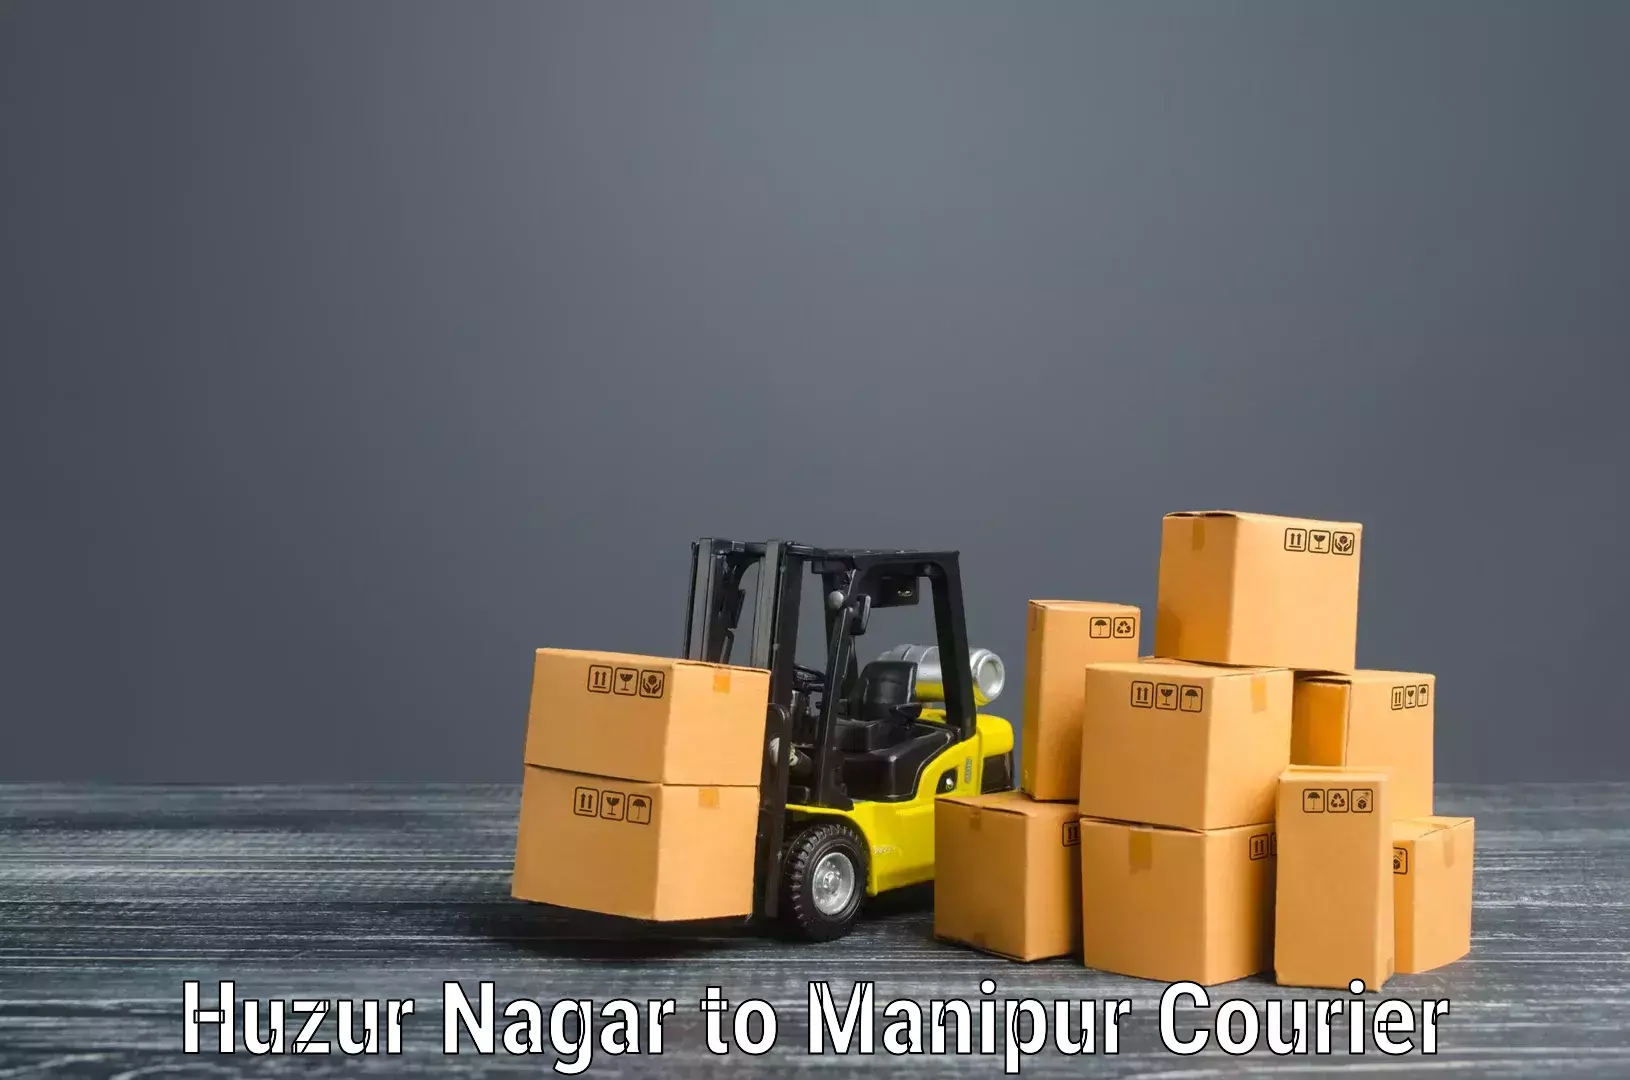 Furniture moving experts Huzur Nagar to Manipur